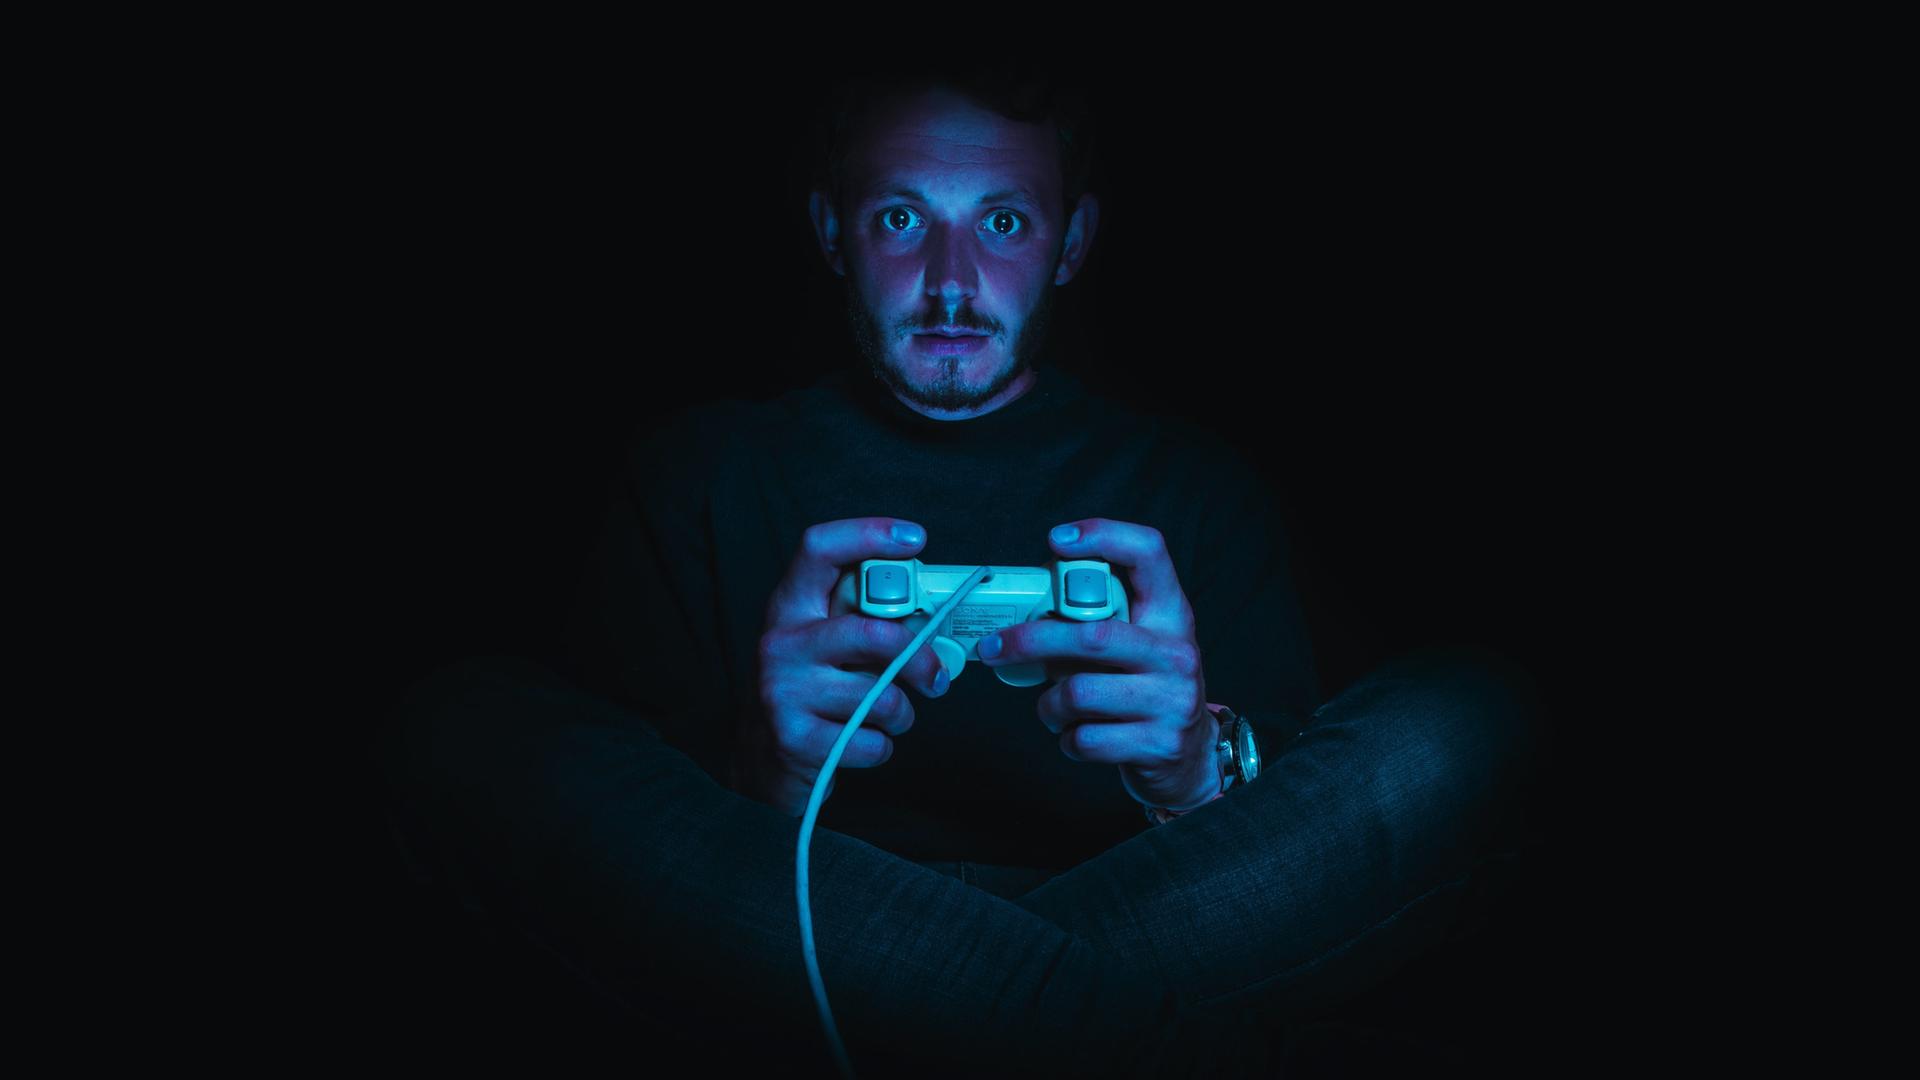 Ein Mann sitzt in einer dunklen Umgebung und hält einen Gaming-Controller. Seine Gesichtshaut ist rötlich, seine Augen sind weit aufgerissen.